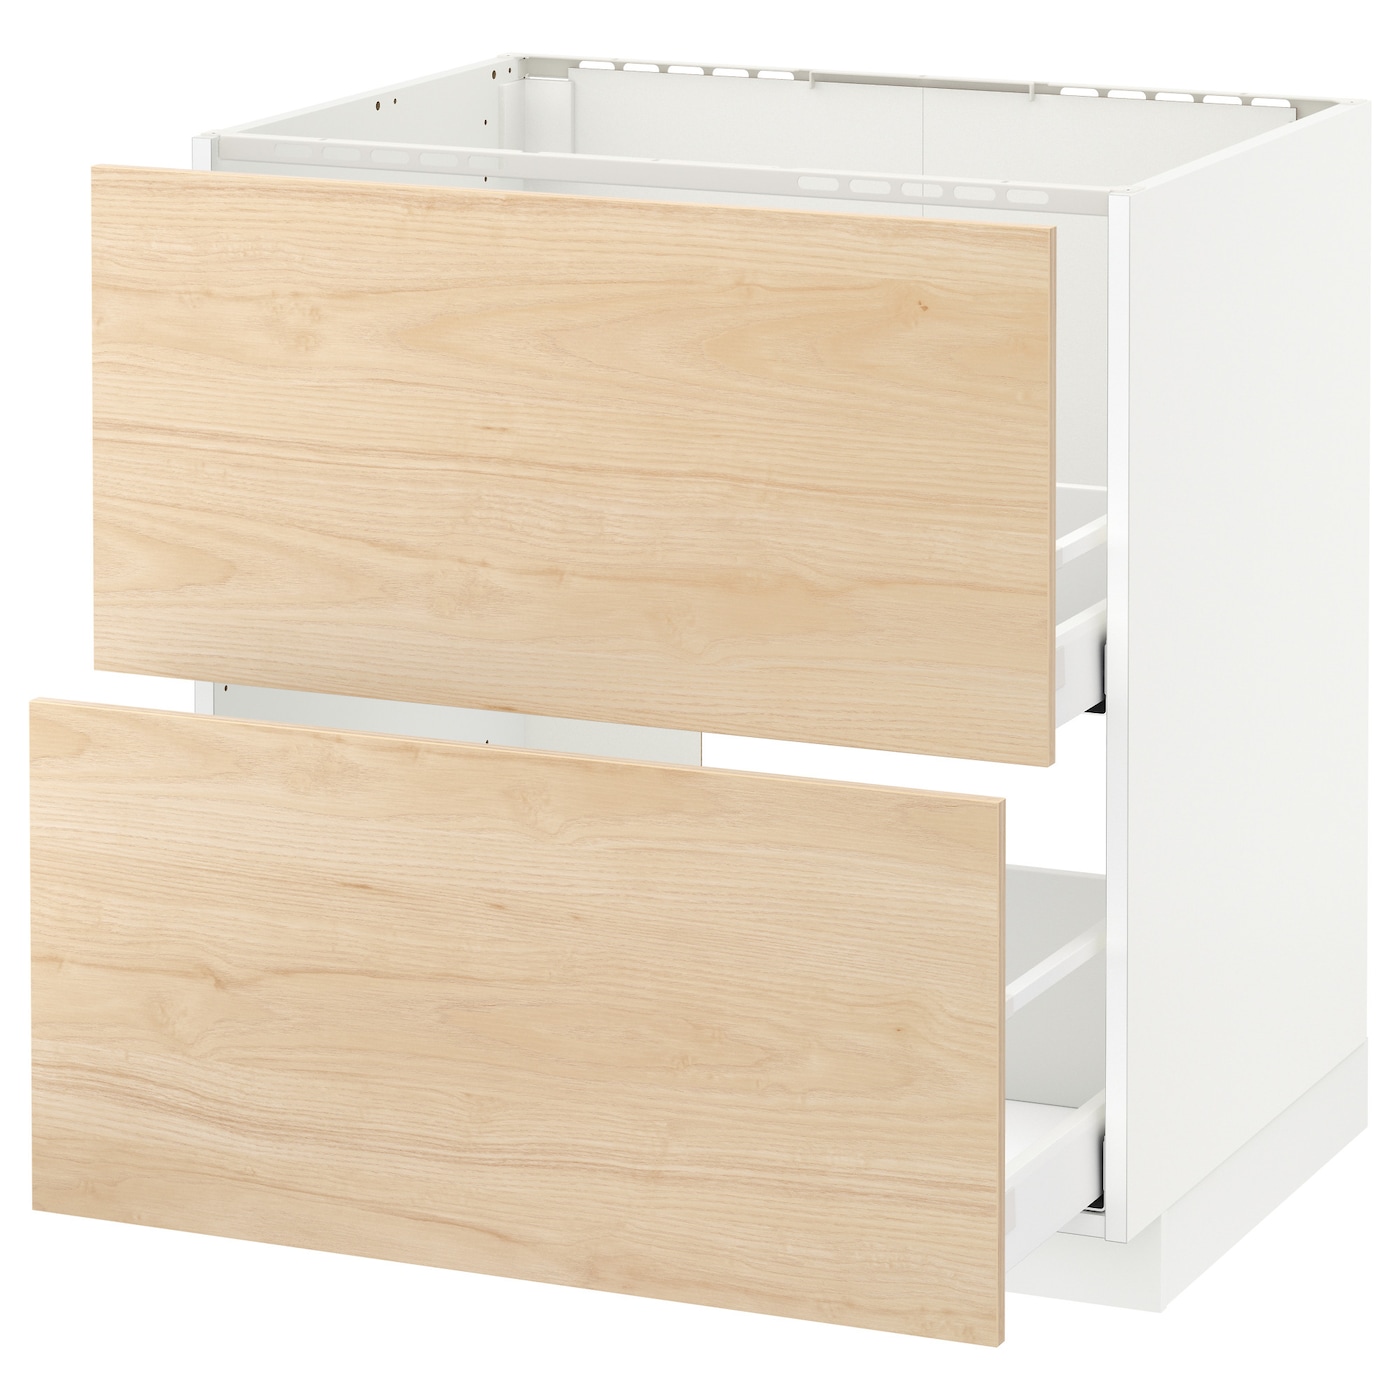 Напольный шкаф - IKEA METOD MAXIMERA, 88x62x80см, белый/светлый ясень, МЕТОД МАКСИМЕРА ИКЕА